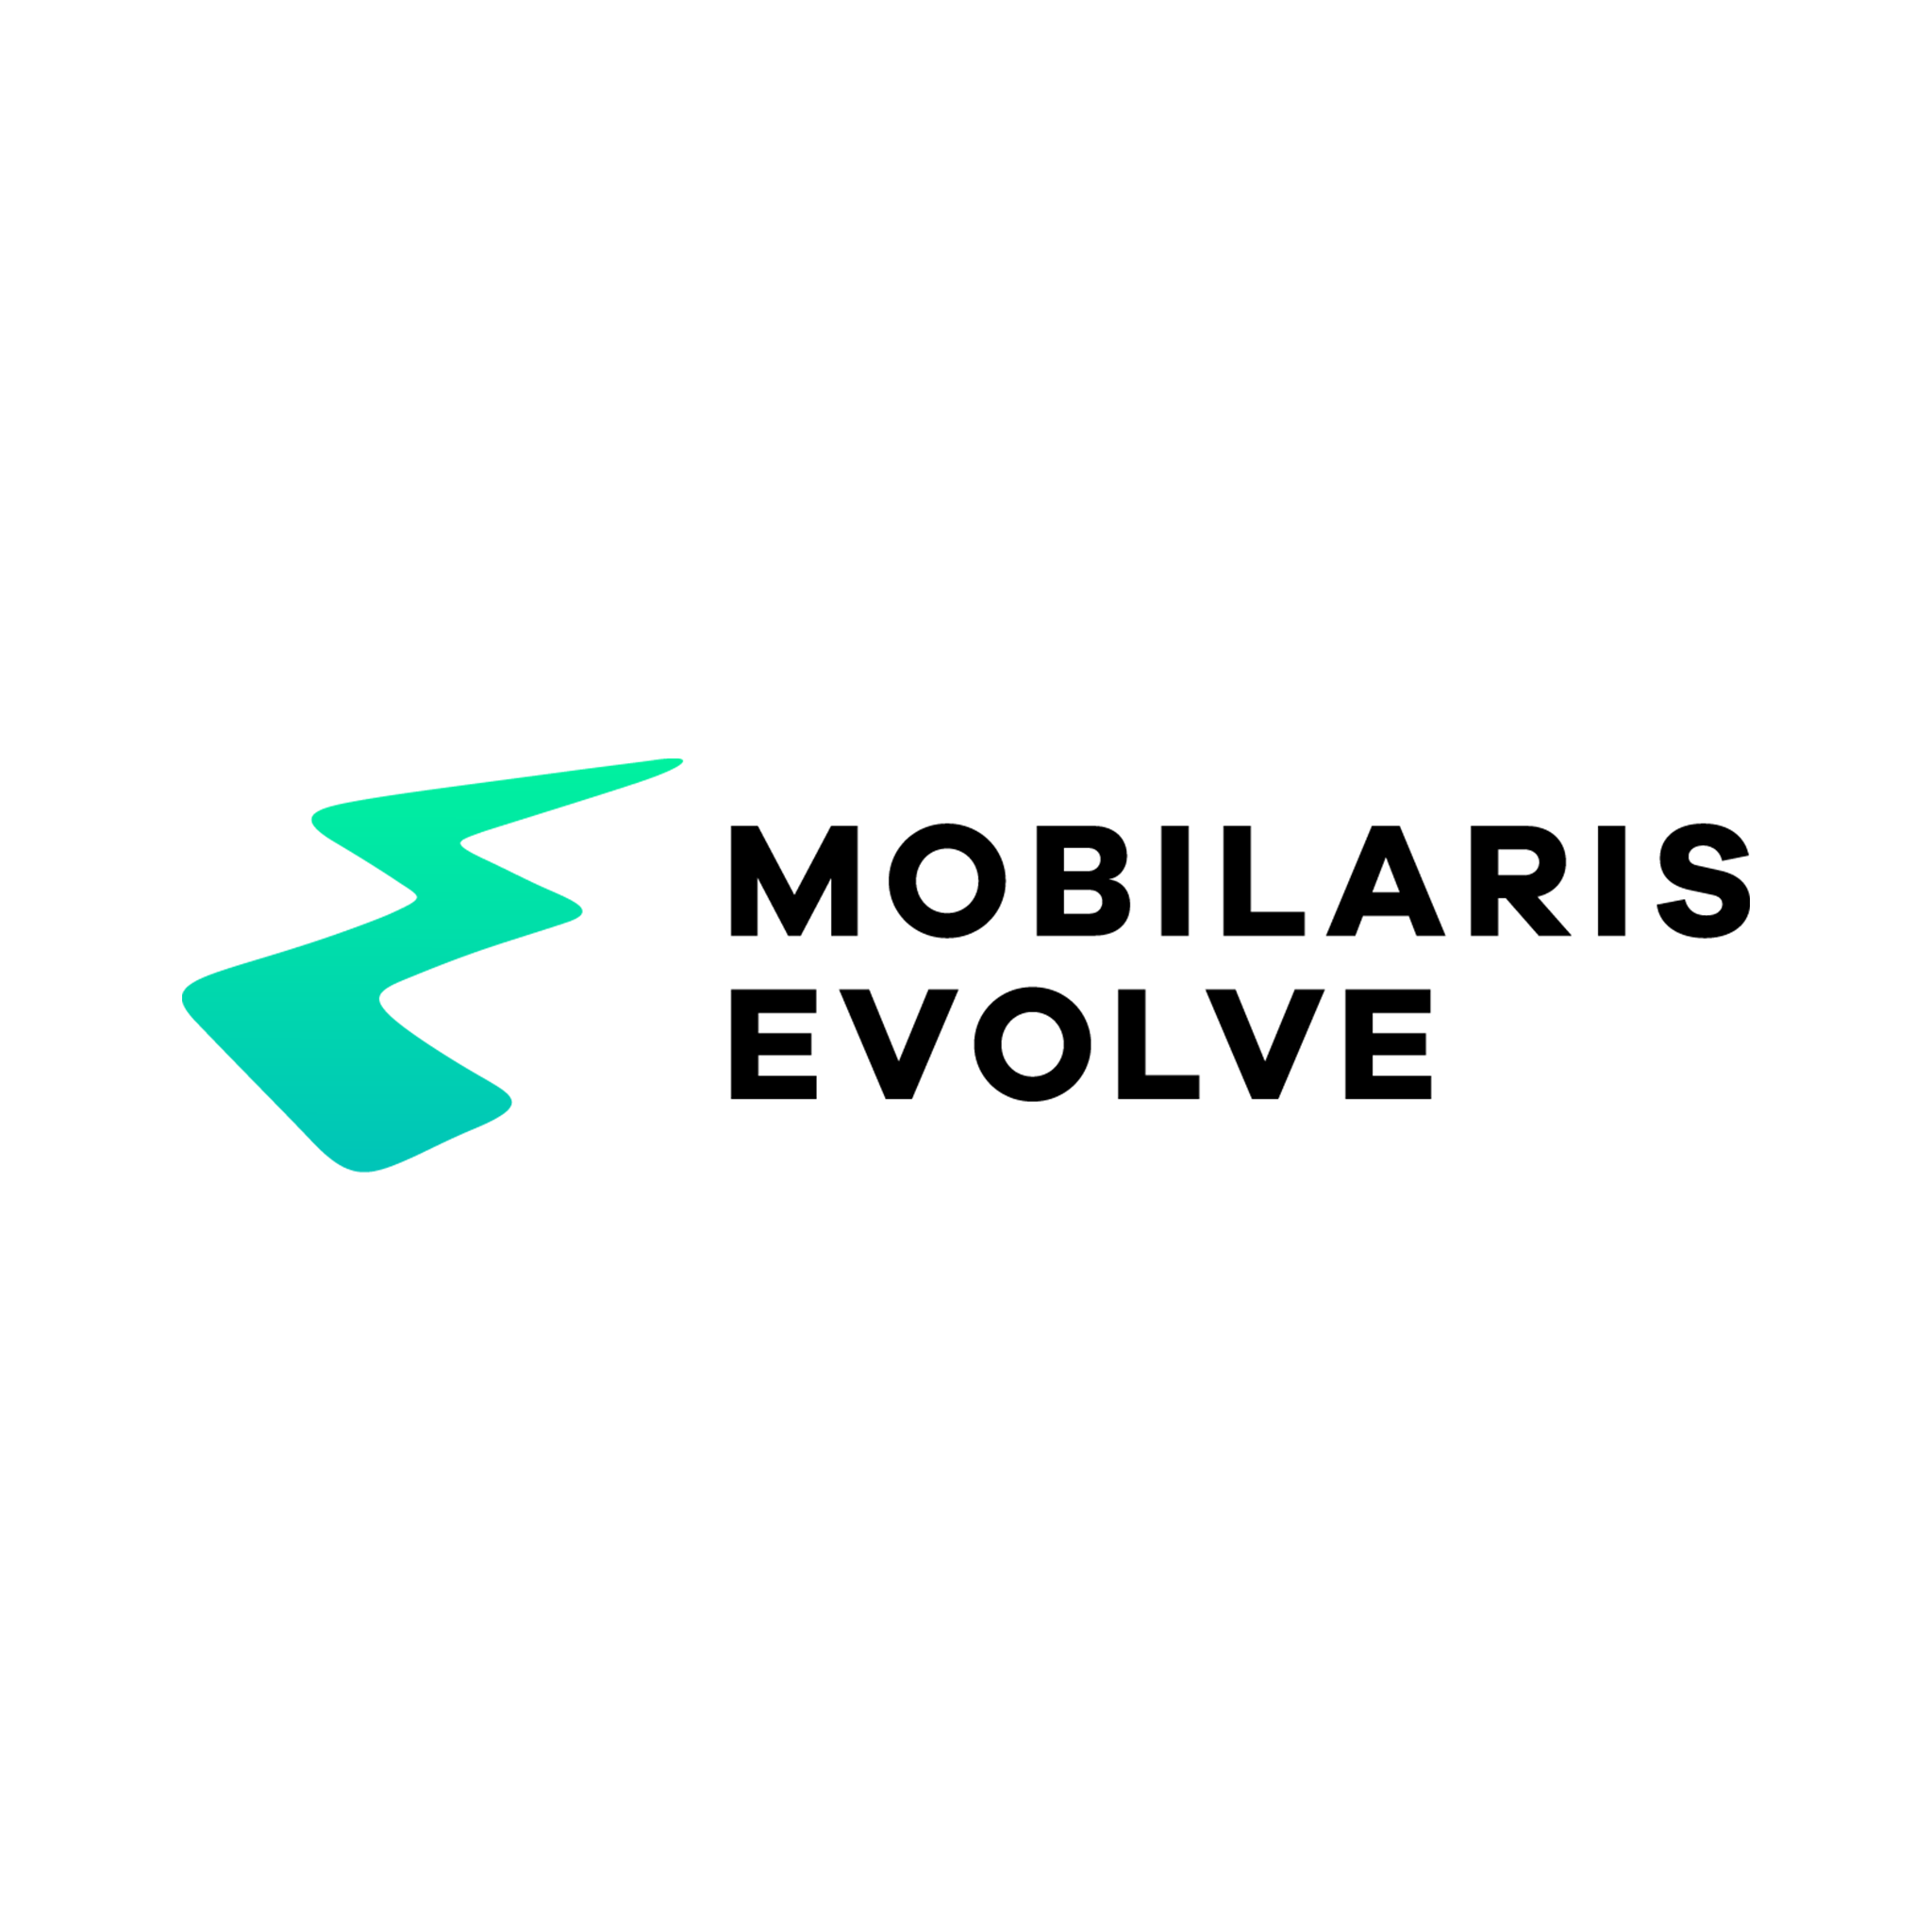 Mobilaris evolve logo in green and black